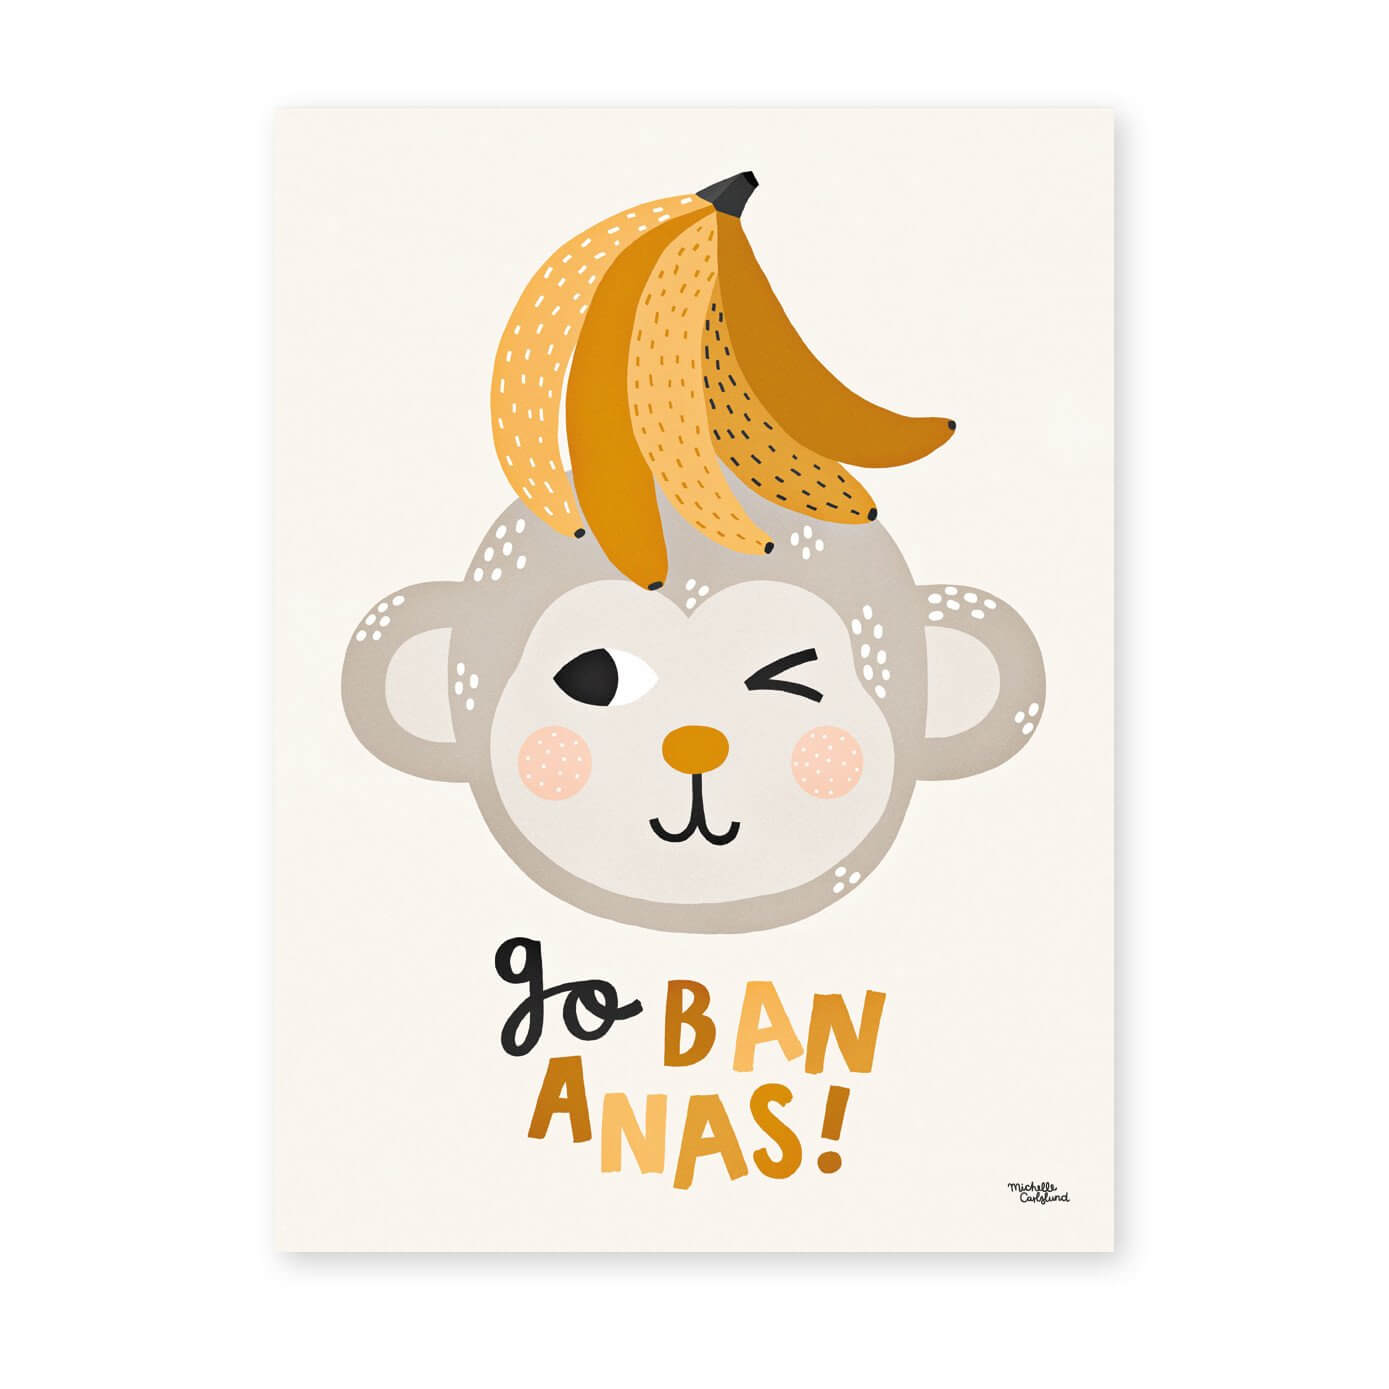 Bananas Michelle Go Carlslund Poster Illustration -